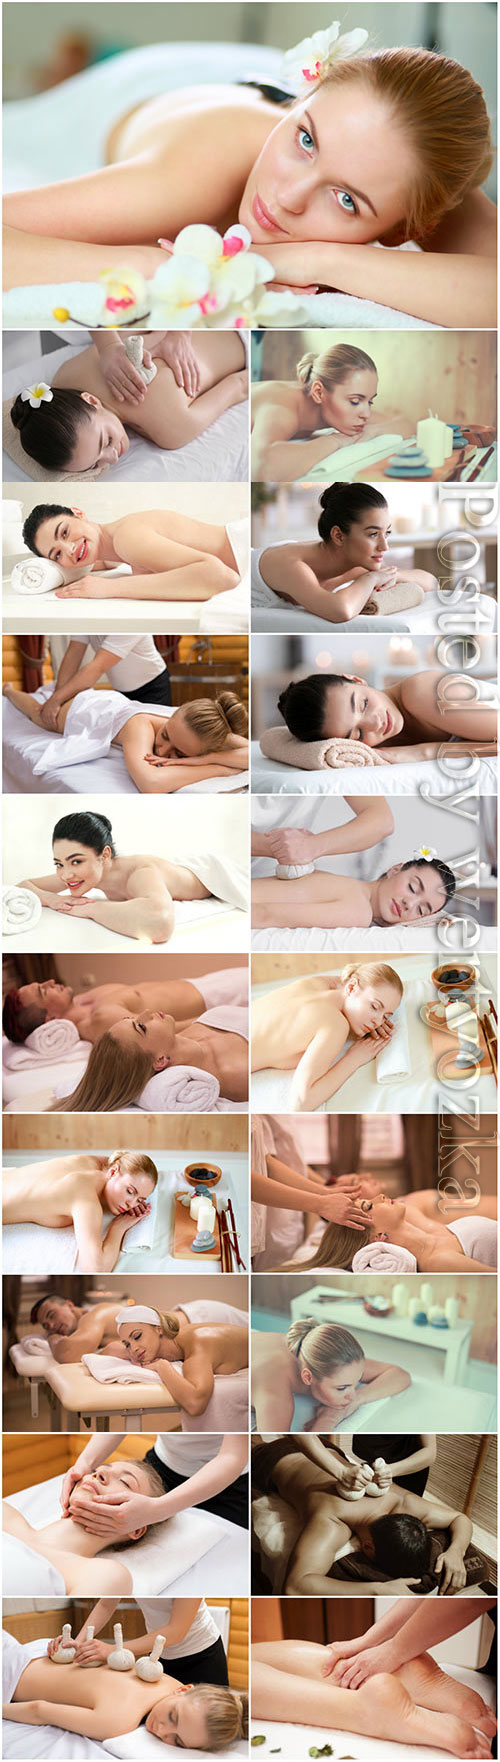 Massage for beautiful girls stock photo